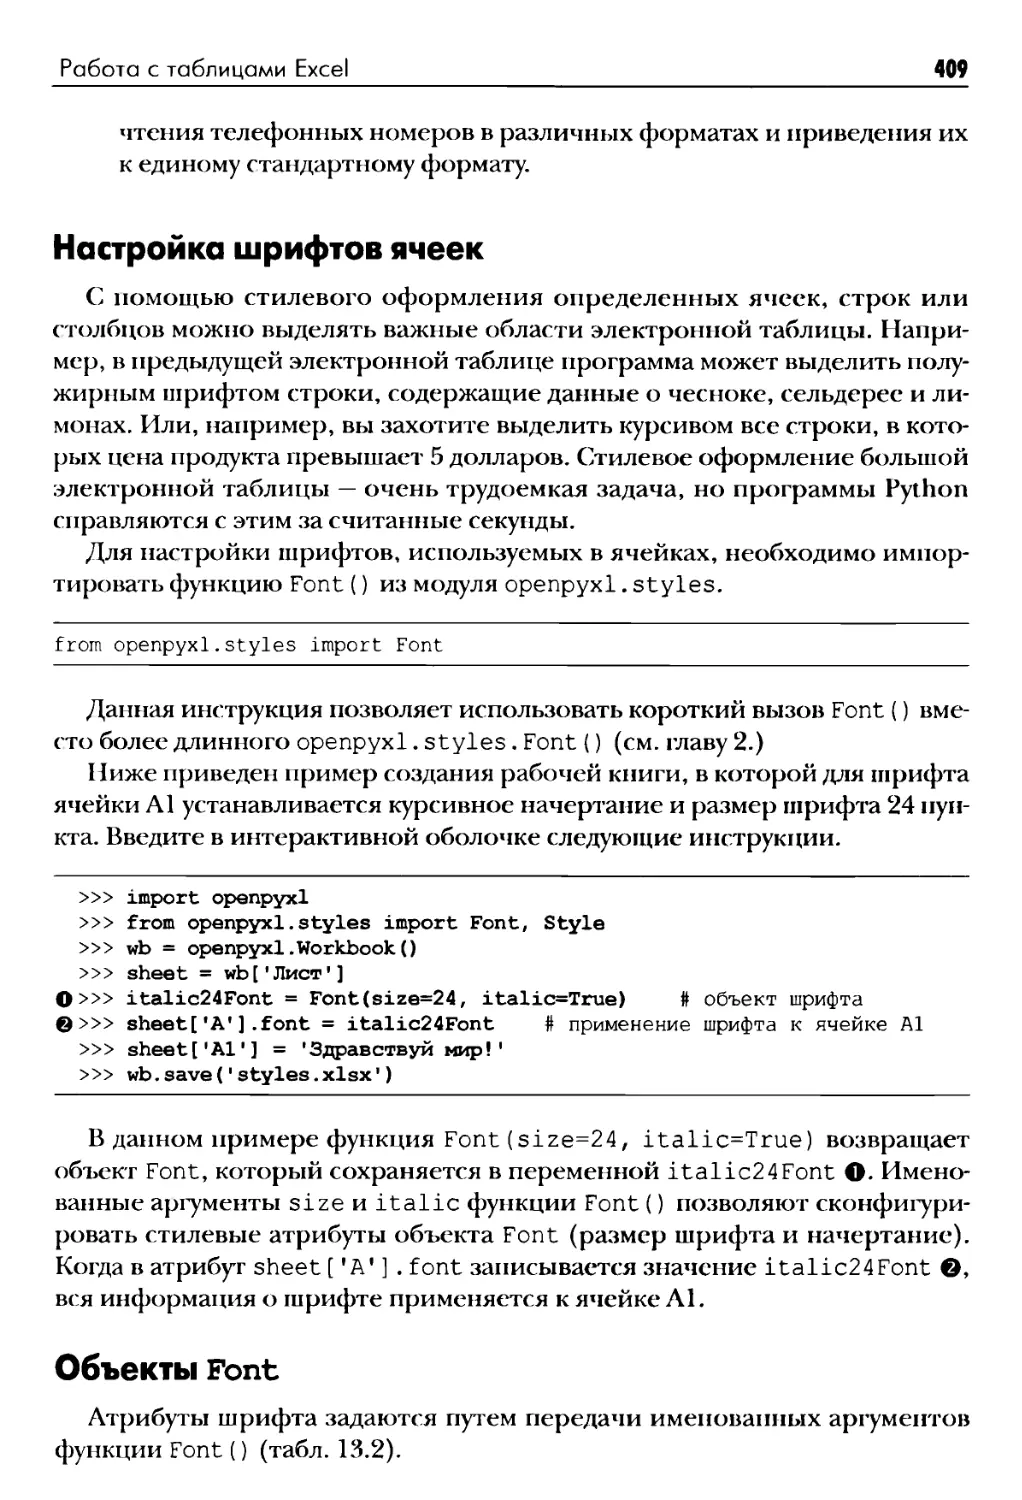 Настройка шрифтов ячеек
Объекты Font